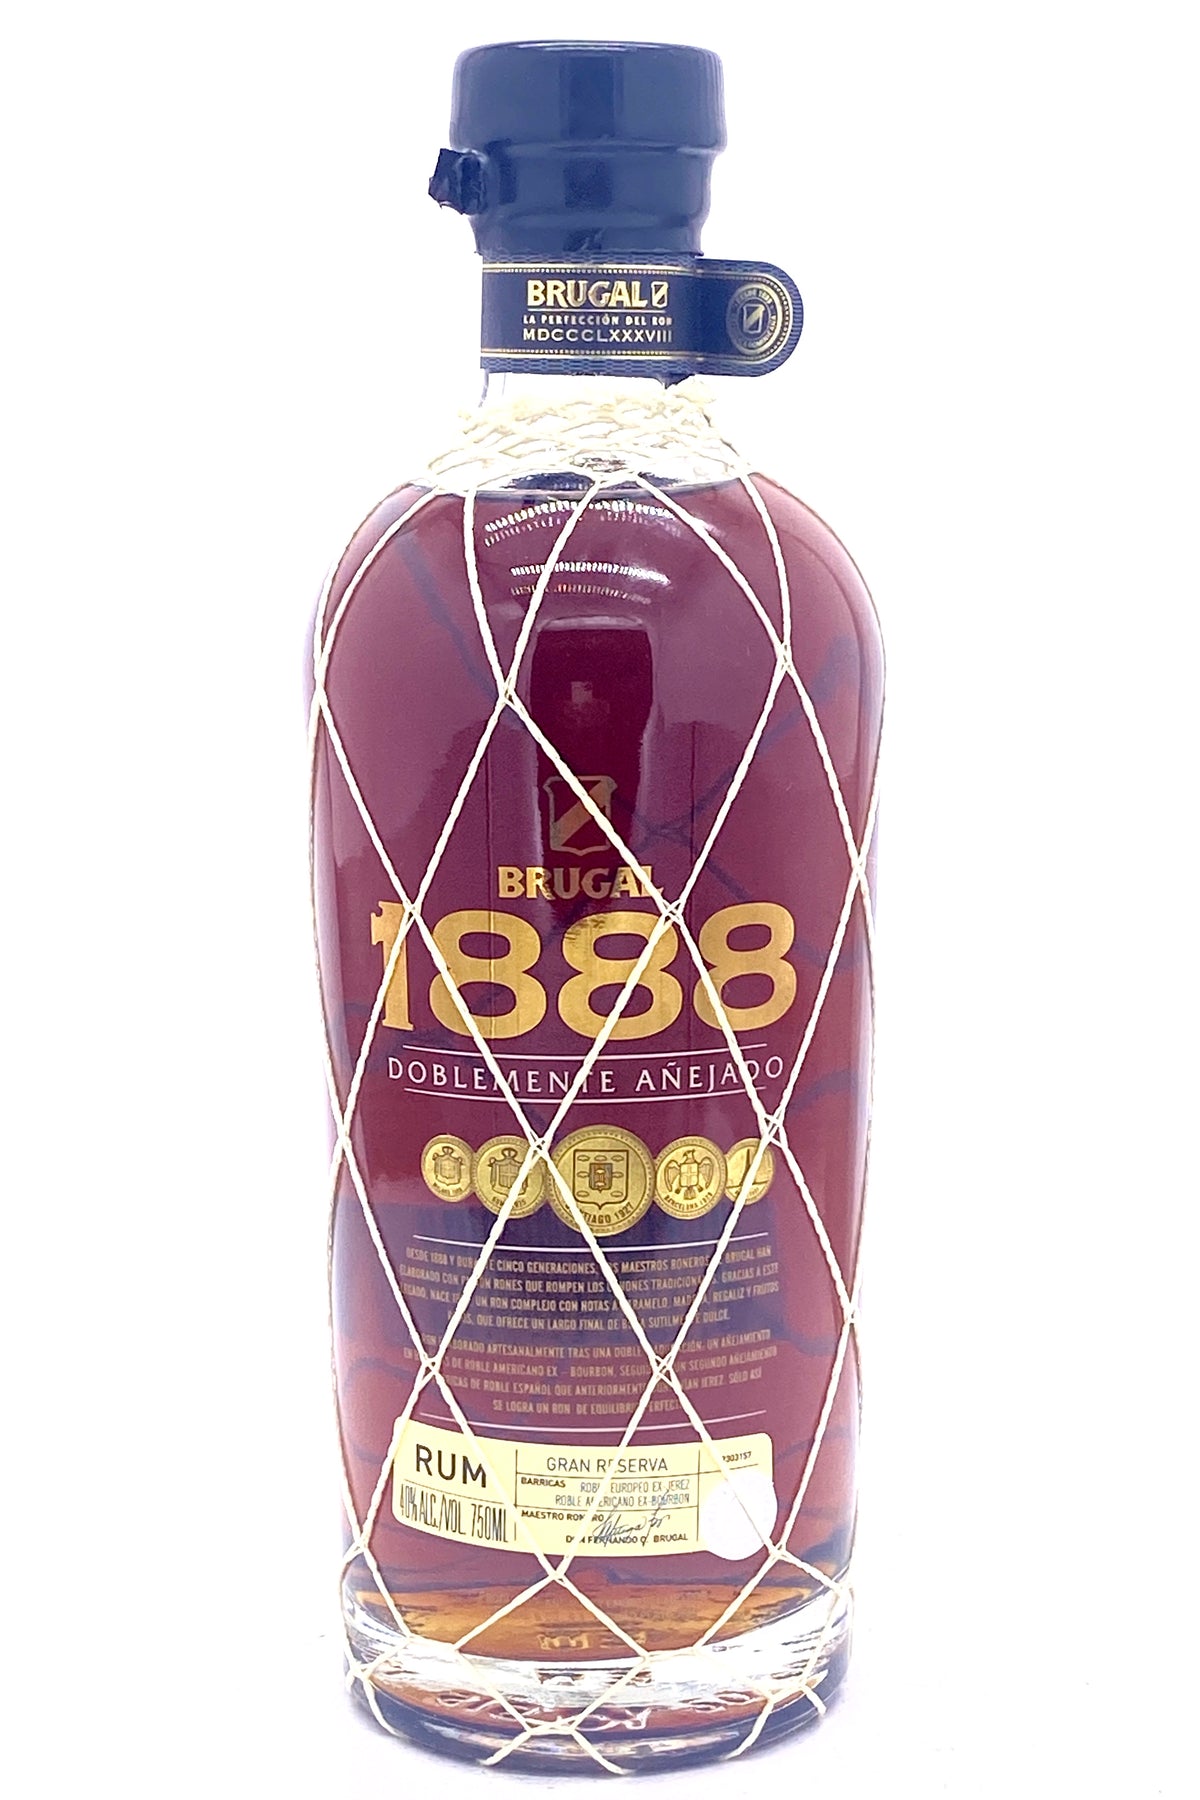 Brugal 1888 Doblemente Añejado Ron Gran Reserva Rum